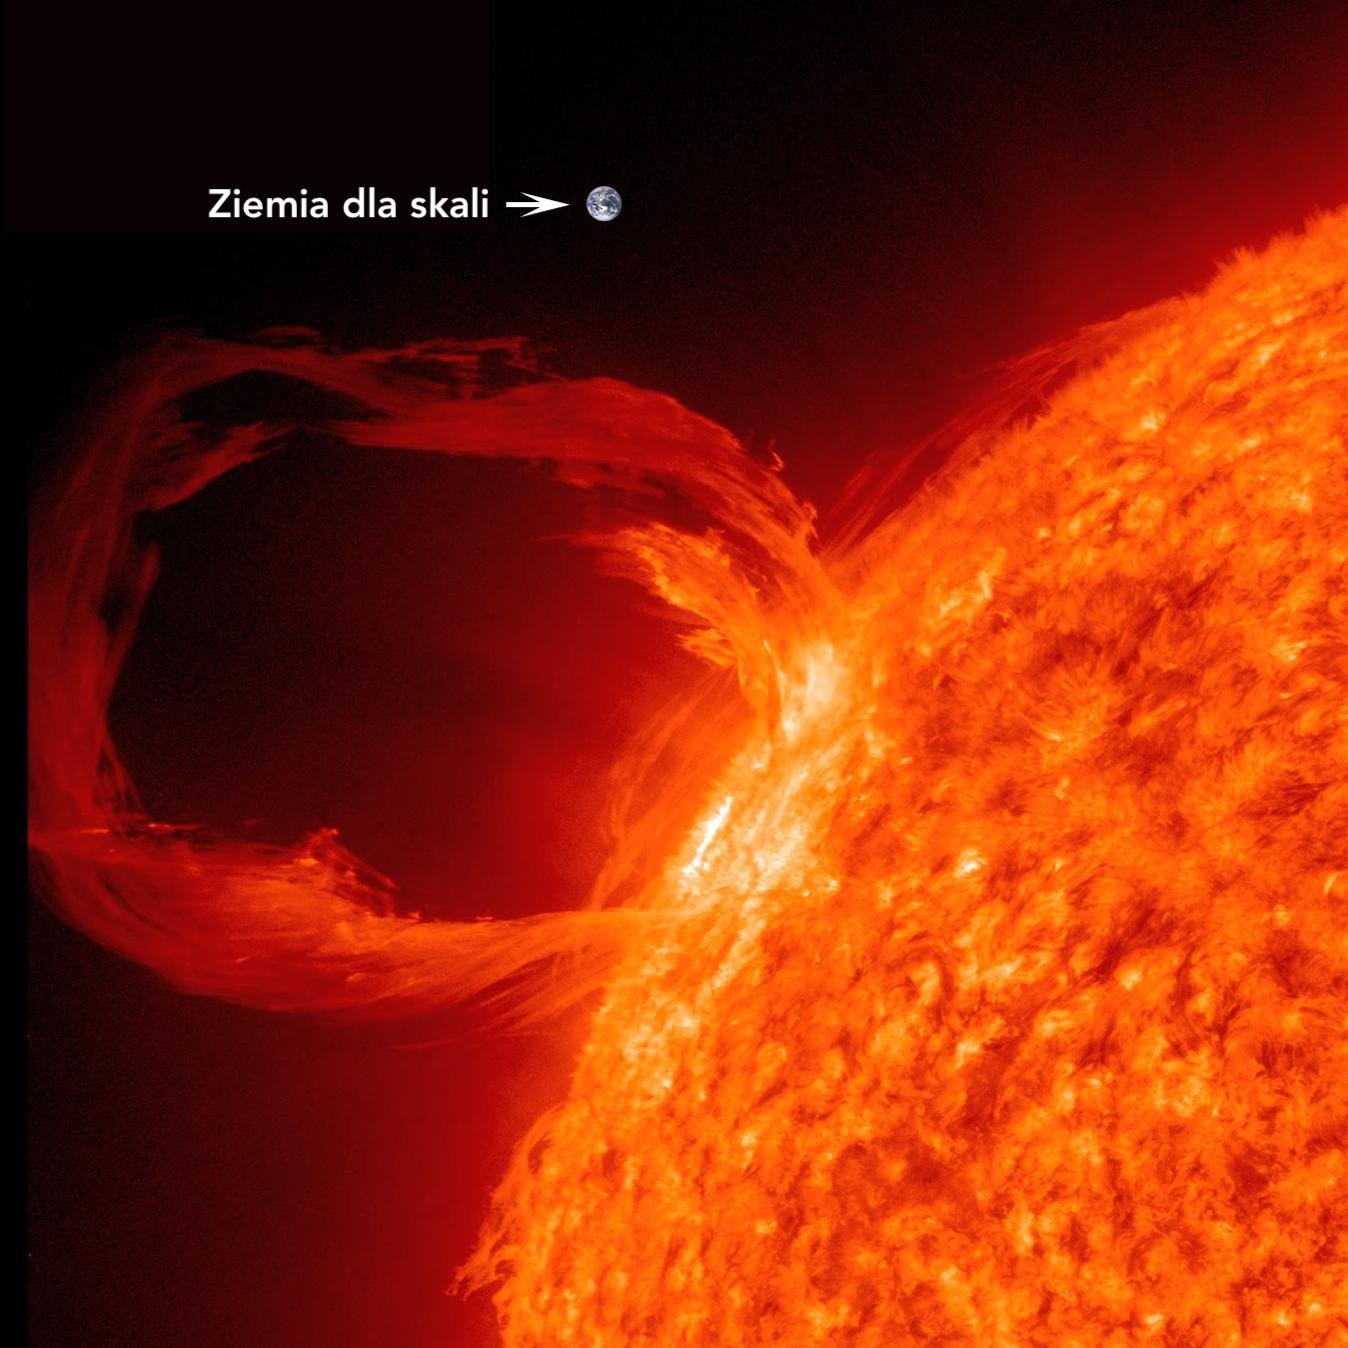 Koronalny wyrzut masy – kształt łuku nadają linie słonecznego pola magnetycznego